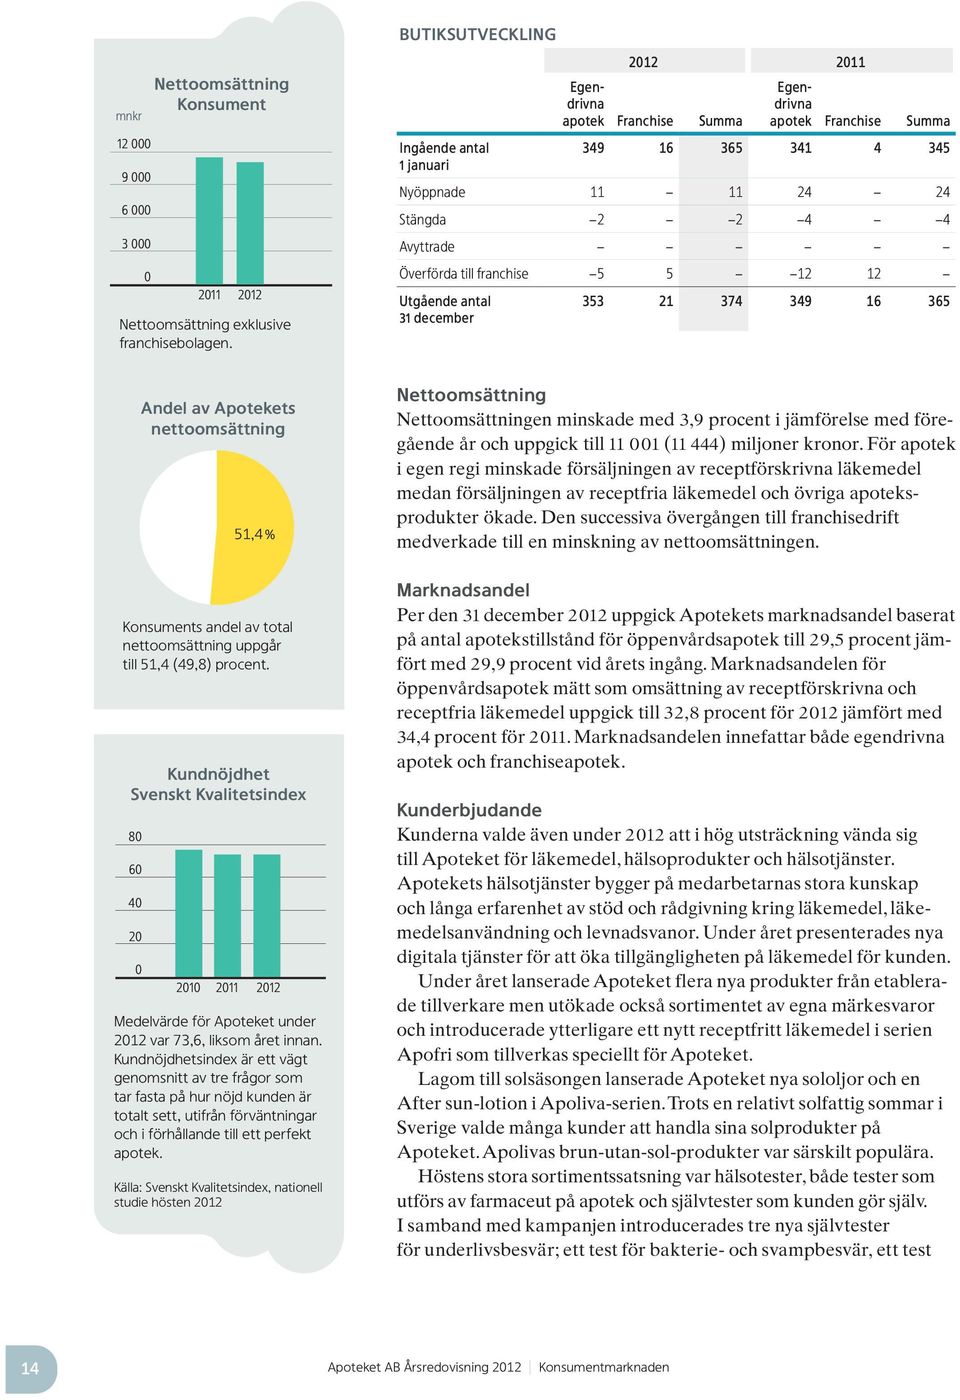 till franchise 5 5 12 12 Utgående antal 31 december 353 21 374 349 16 365 Andel av Apotekets nettoomsättning 51,4 % Konsuments andel av total nettoomsättning uppgår till 51,4 (49,8) procent.